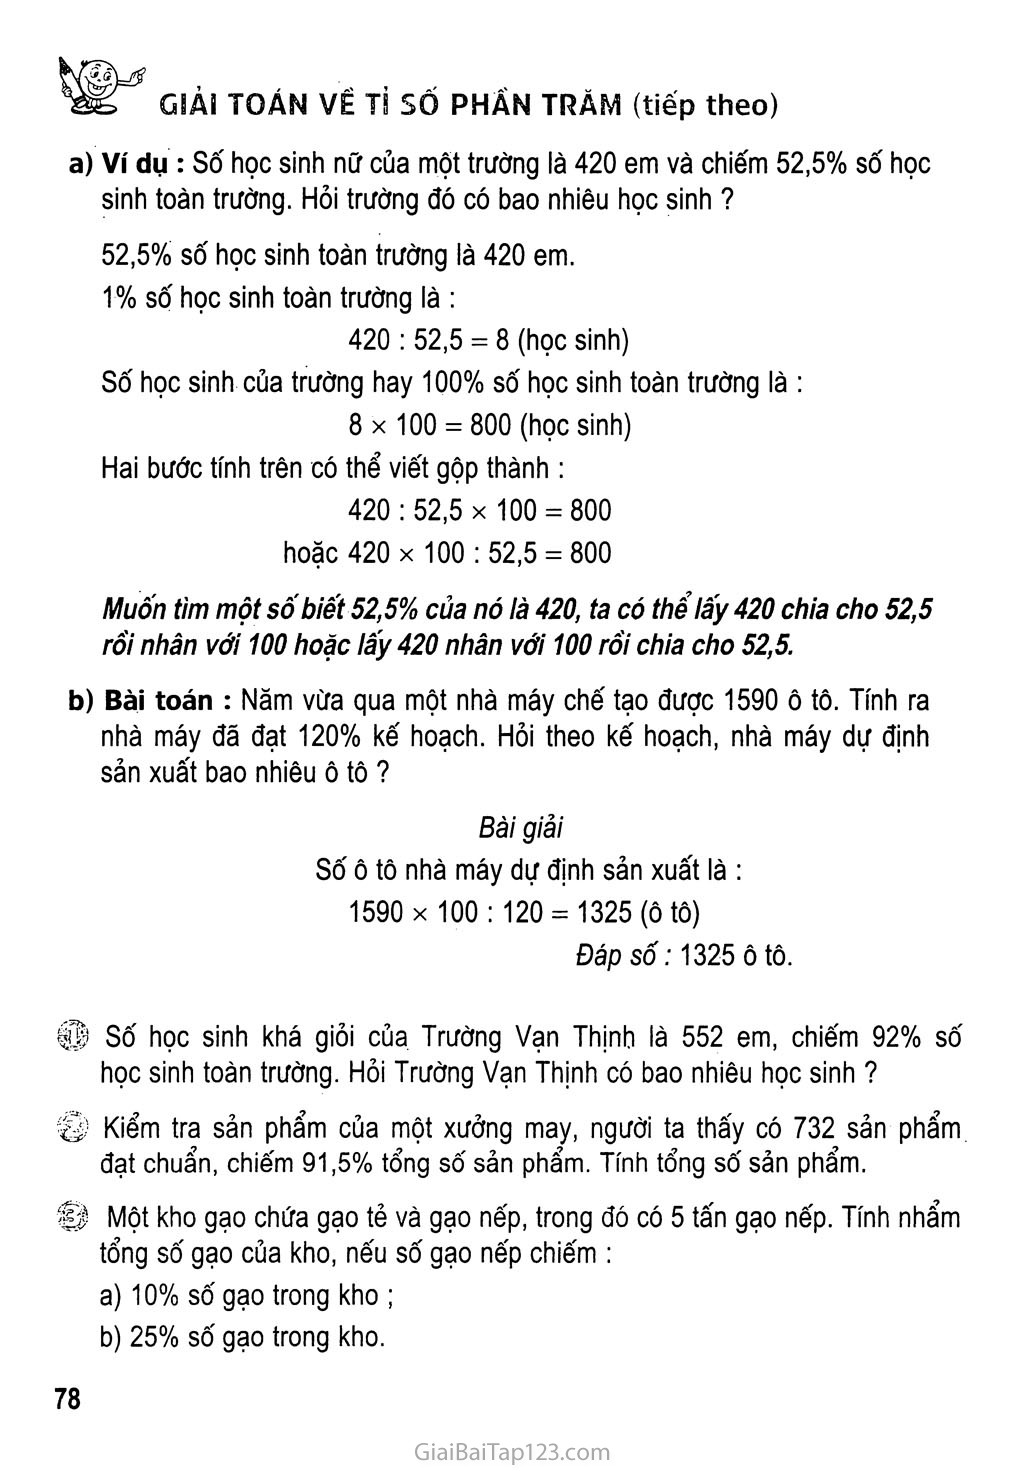 Giải toán về tỉ số phần trăm (tiếp theo) trang 1